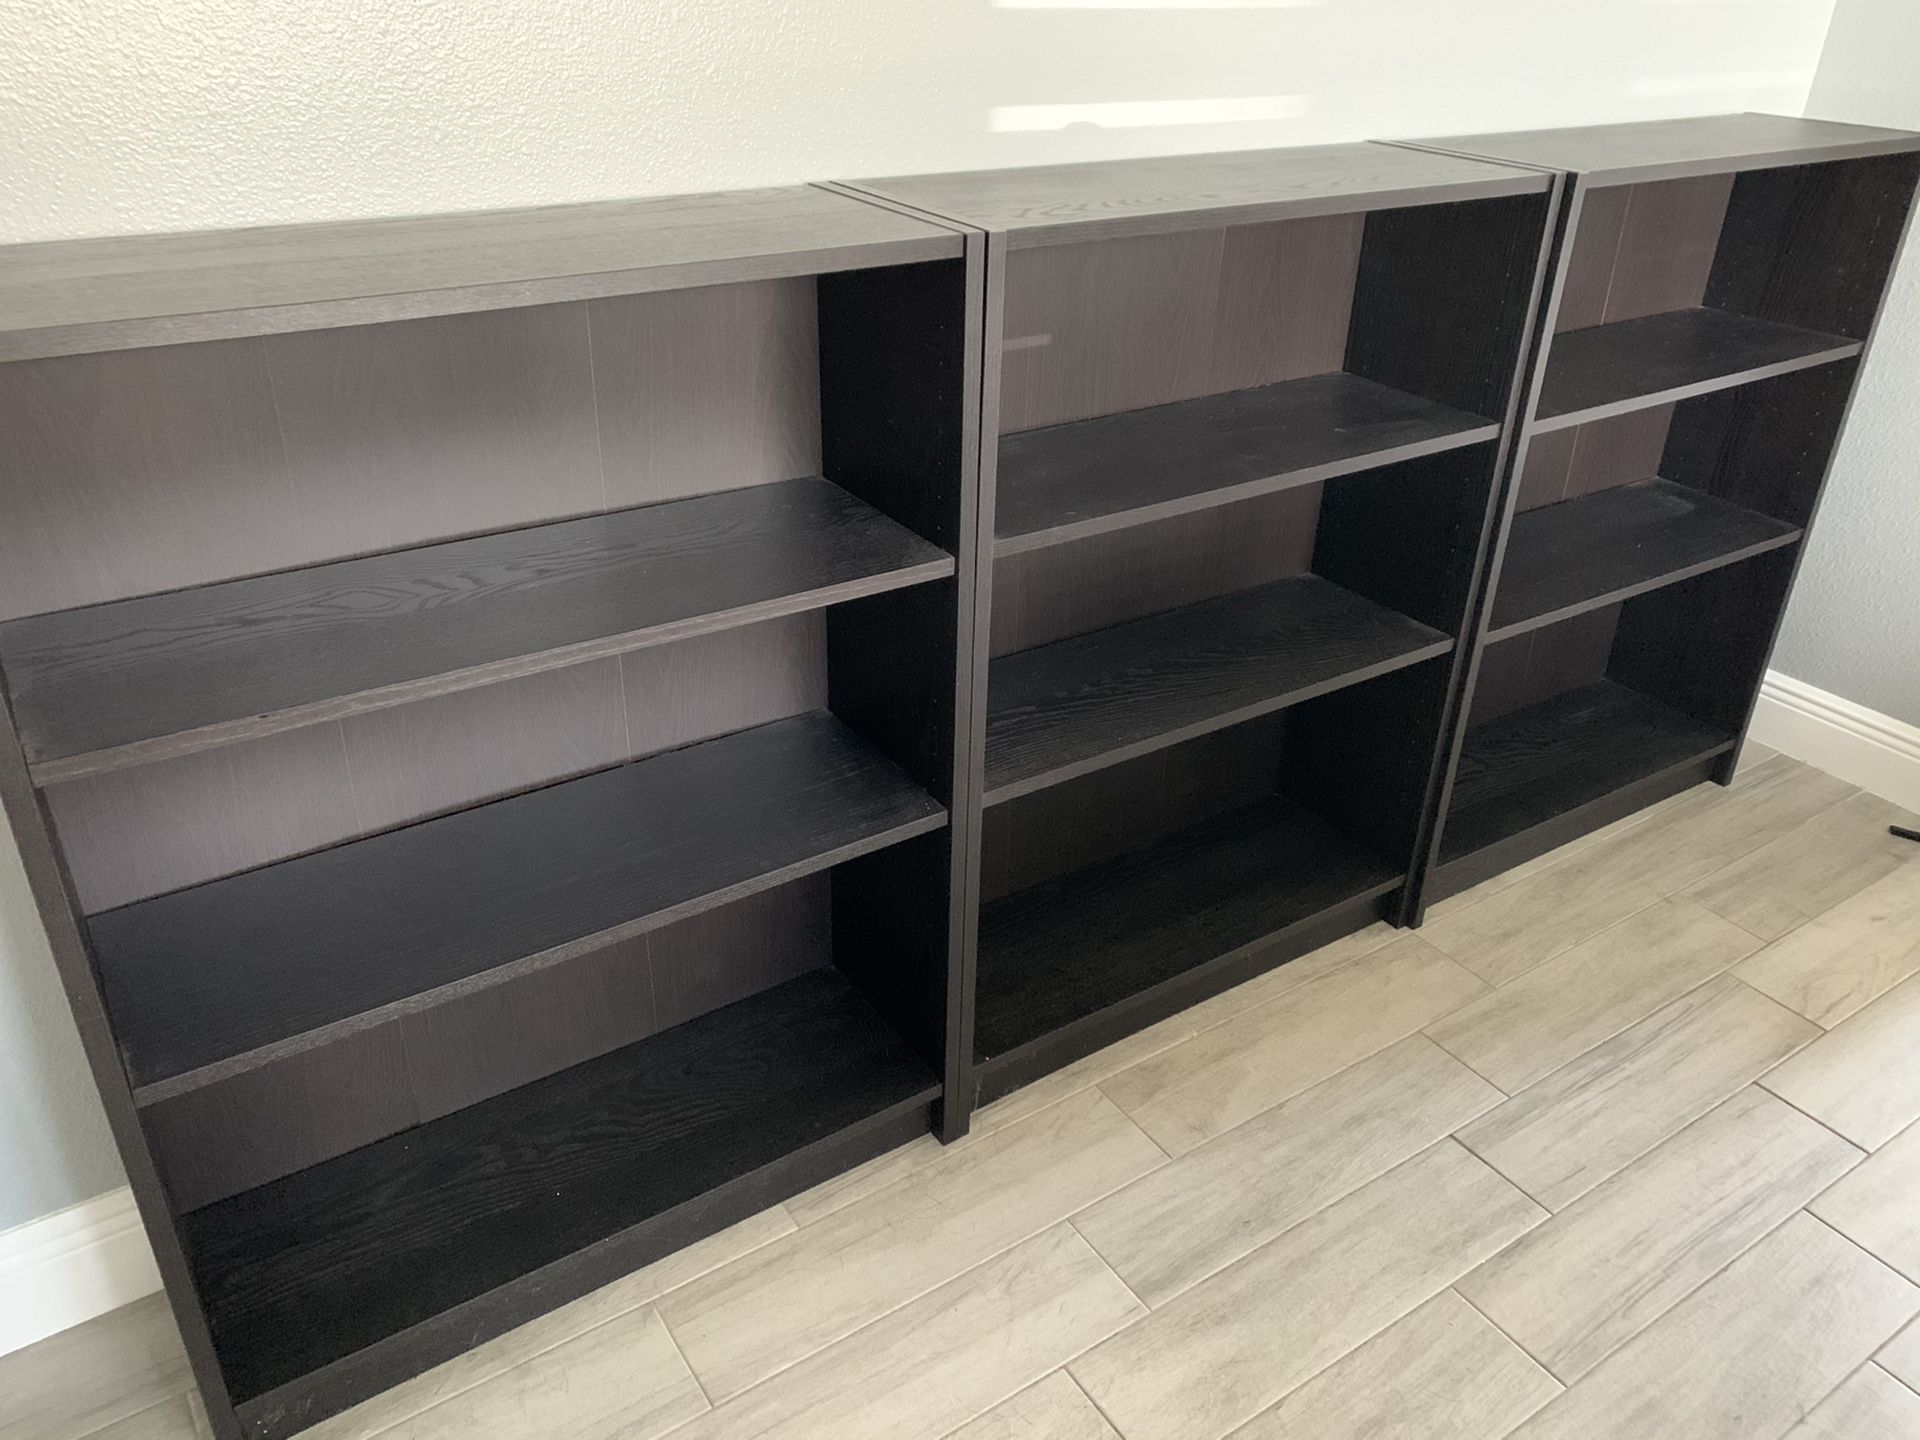 Bookshelves (IKEA)